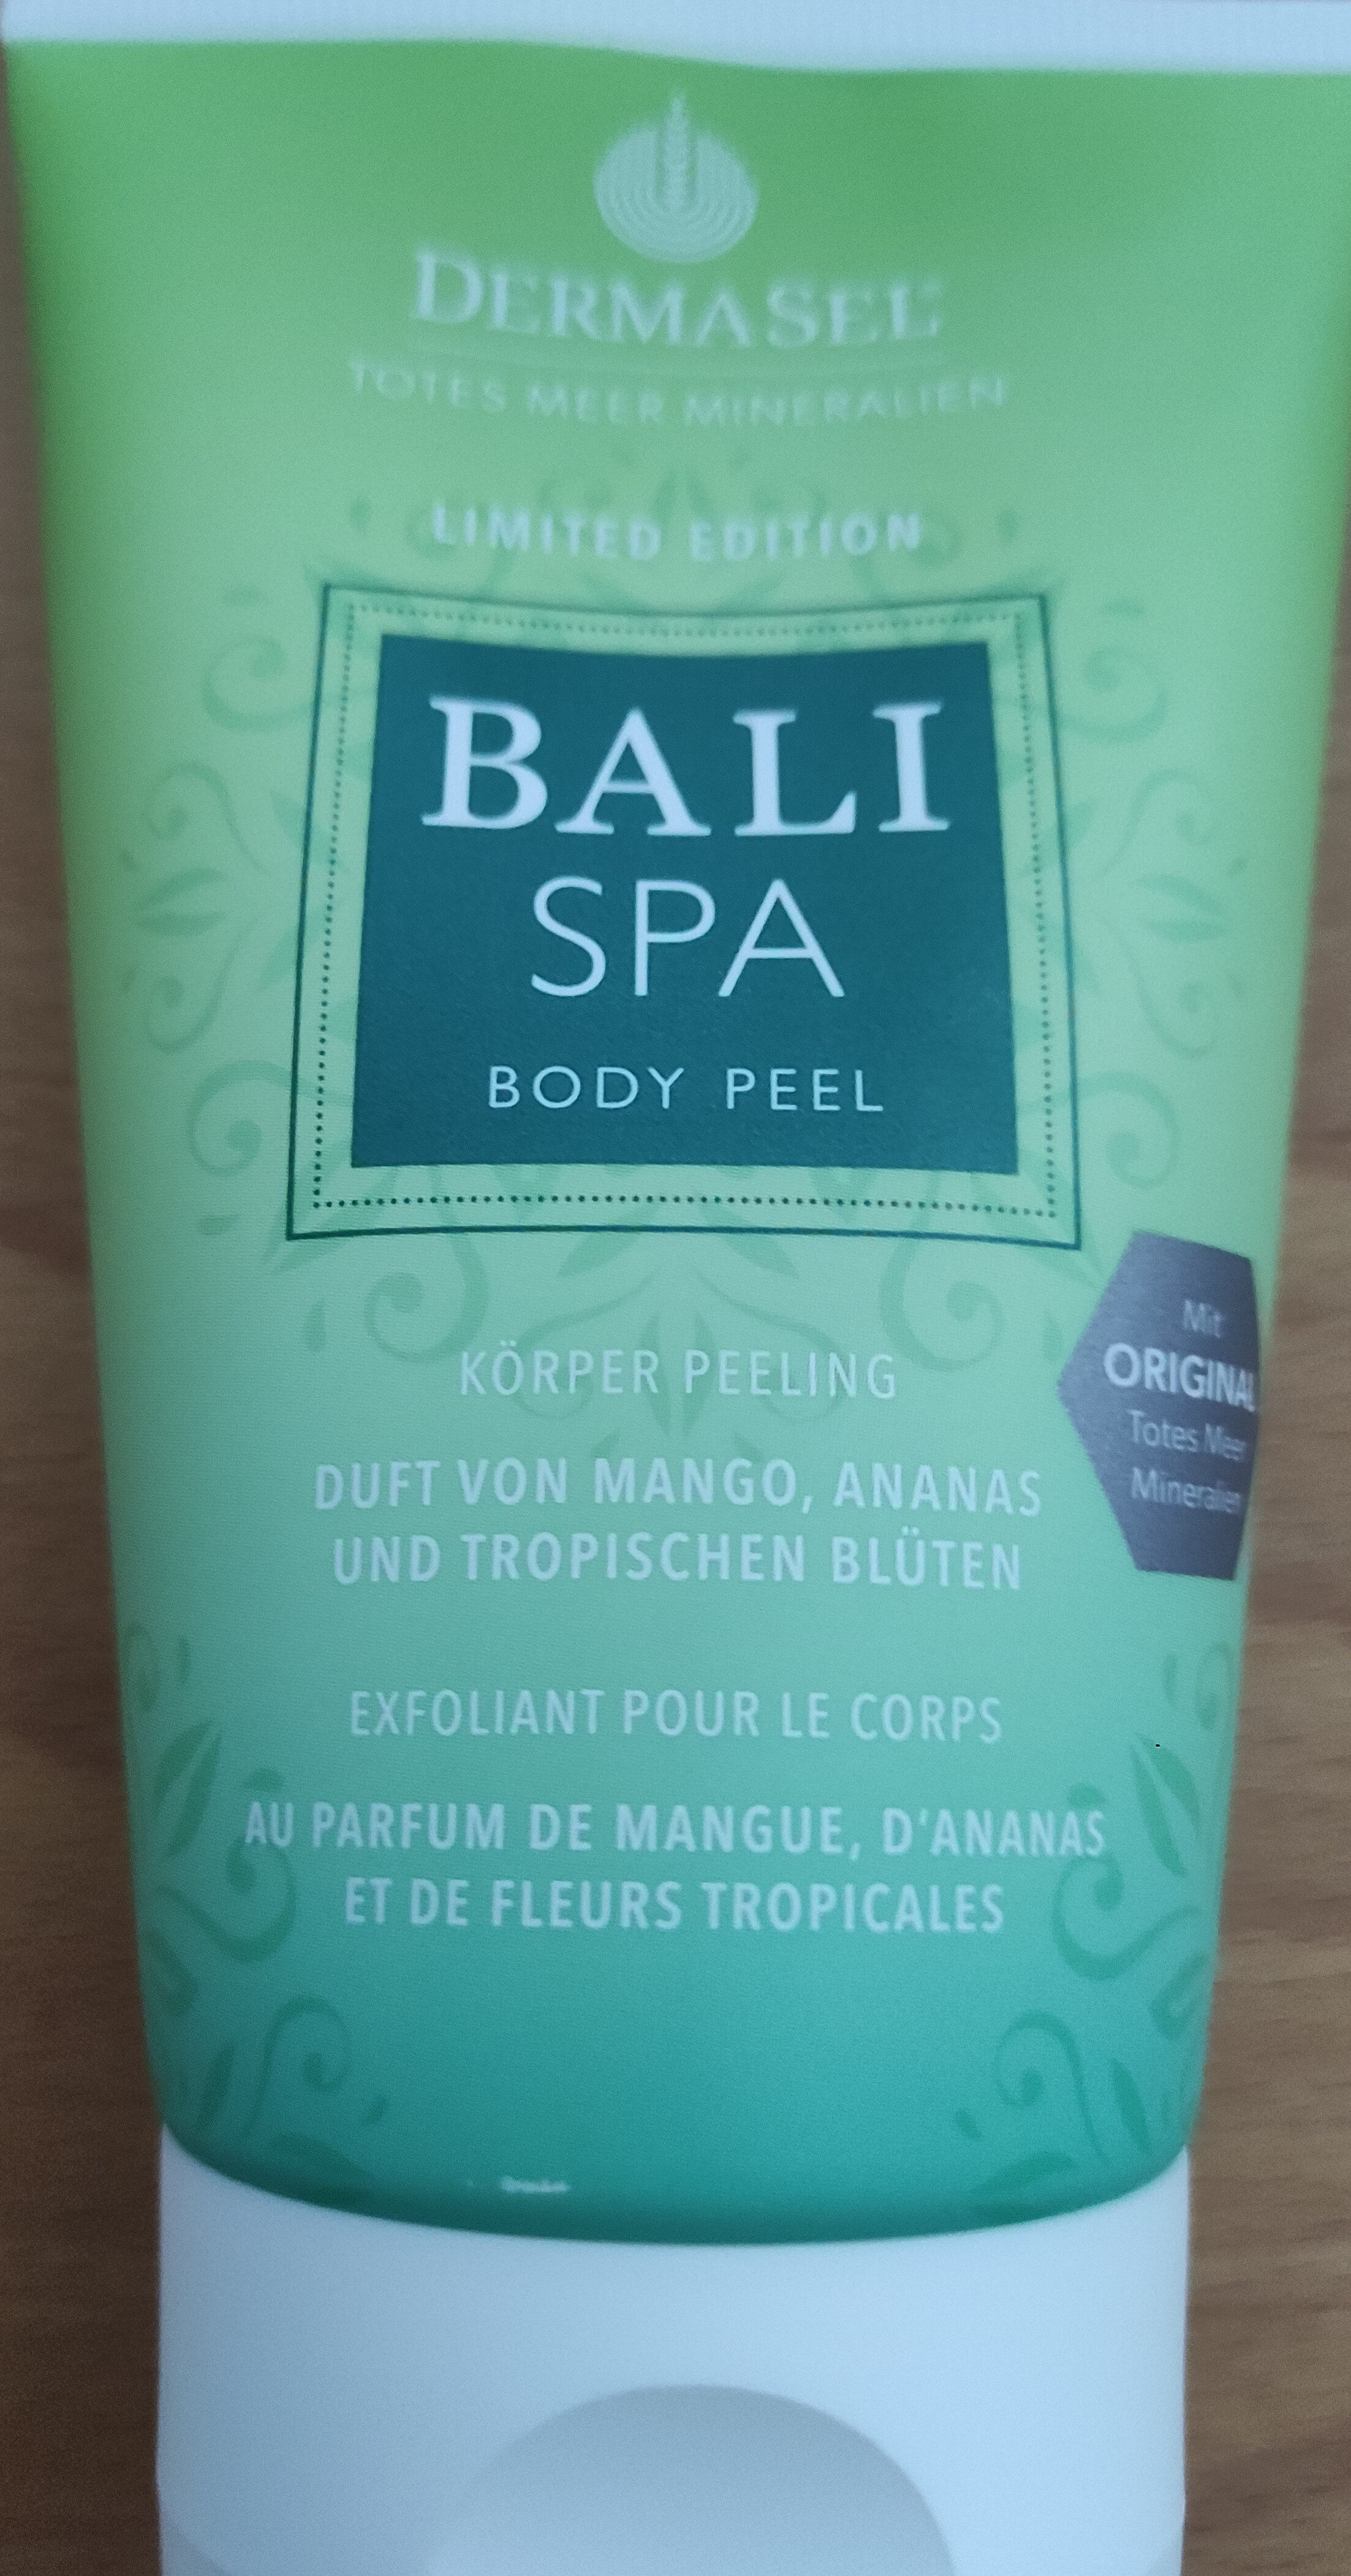 Dermasel Bali Spa Body Peel Körper Peeling - Produto - de